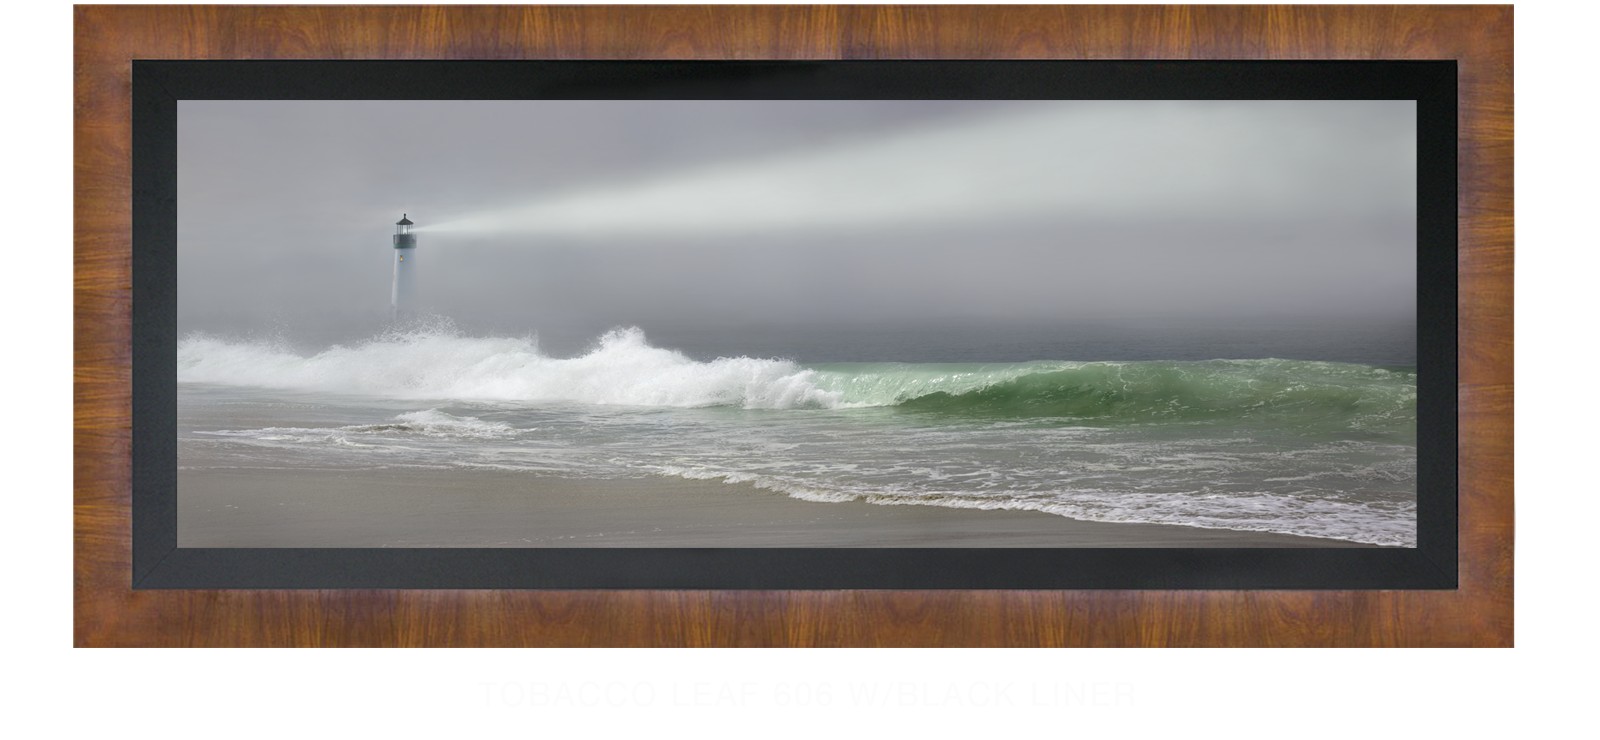 23DLighthouse Tobacco Leaf 606 w_Blk Liner T